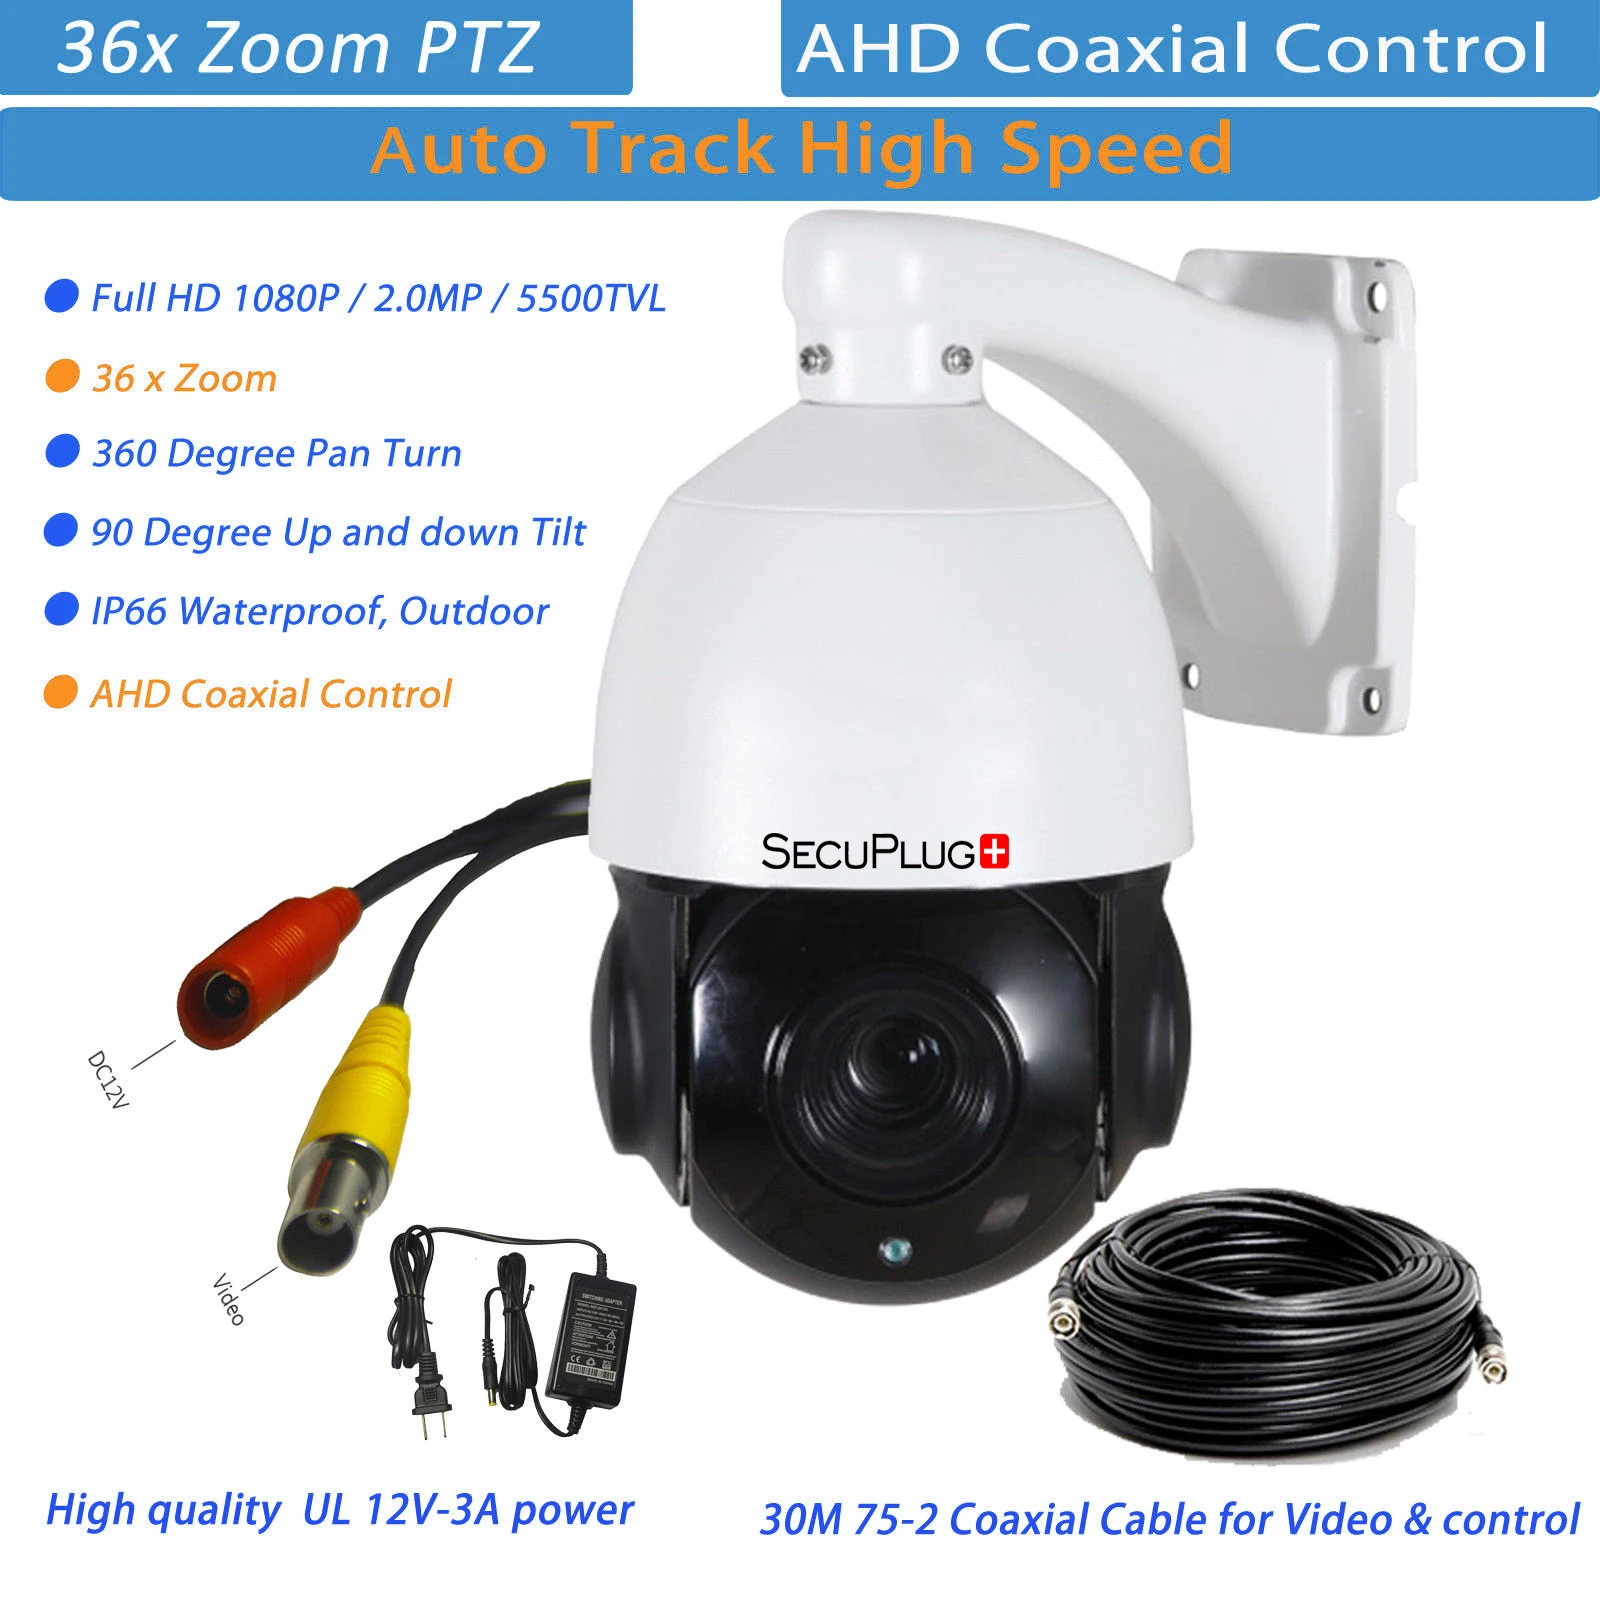 36x зум Автоматическая слежение PTZ камера высокая скорость купол 1080P AHD CCTV камера безопасности Onvif 100 м ИК ночного видения IP66 водонепроницаемый